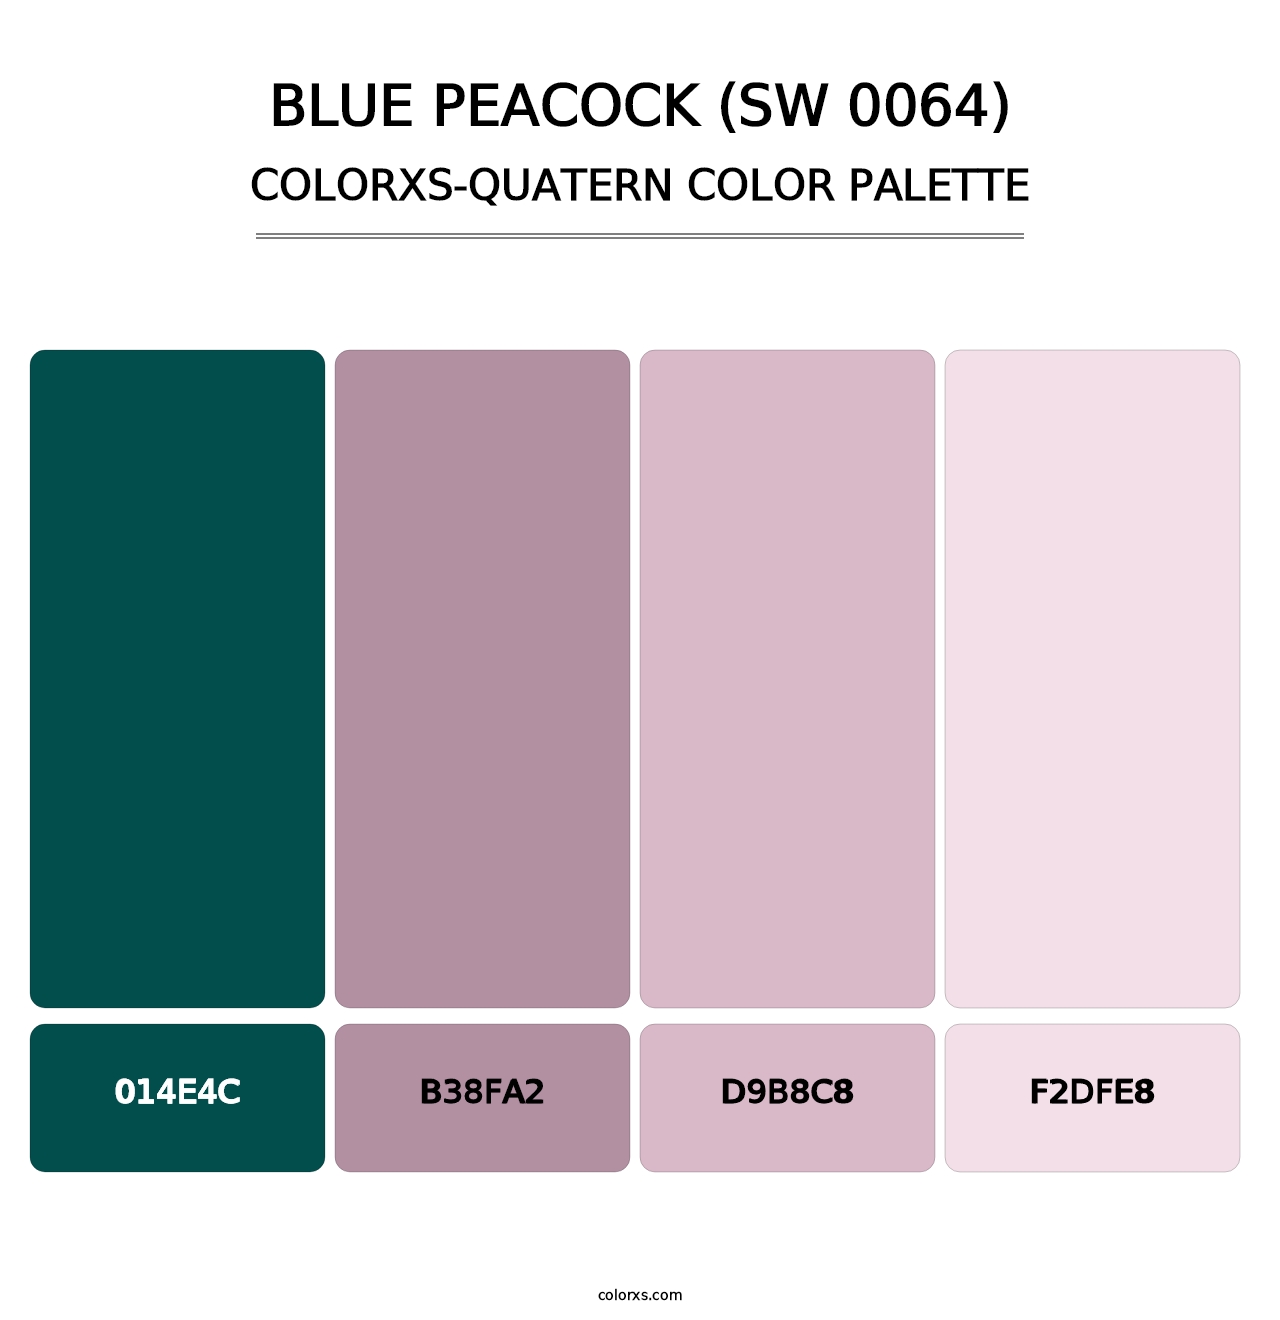 Blue Peacock (SW 0064) - Colorxs Quatern Palette